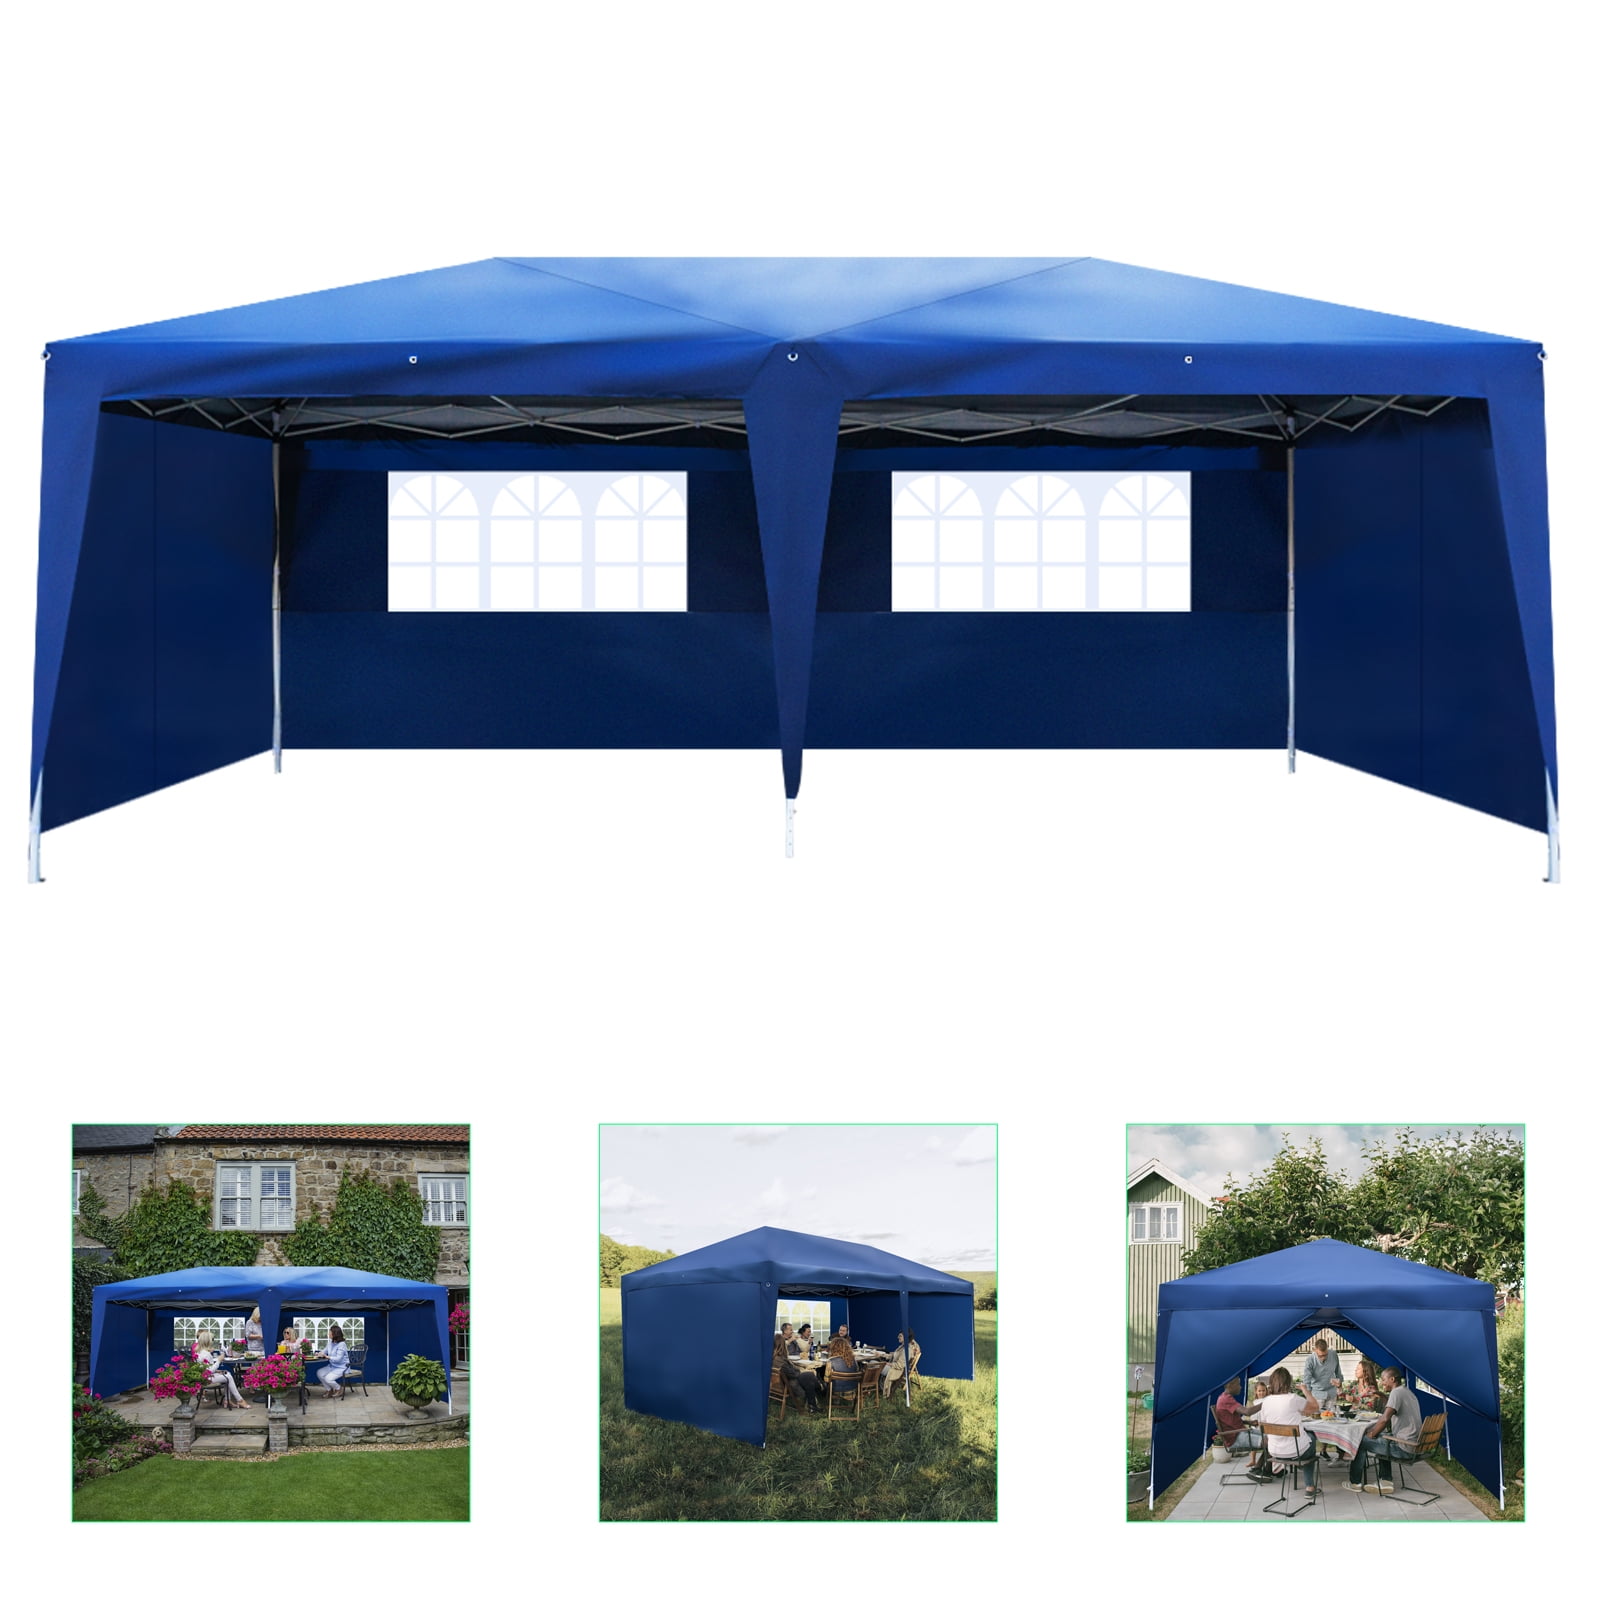 Φ22mm*2.5M Canopy Tent Rain Tarp Trail Sun Shade Awning Shelter Tent Poles